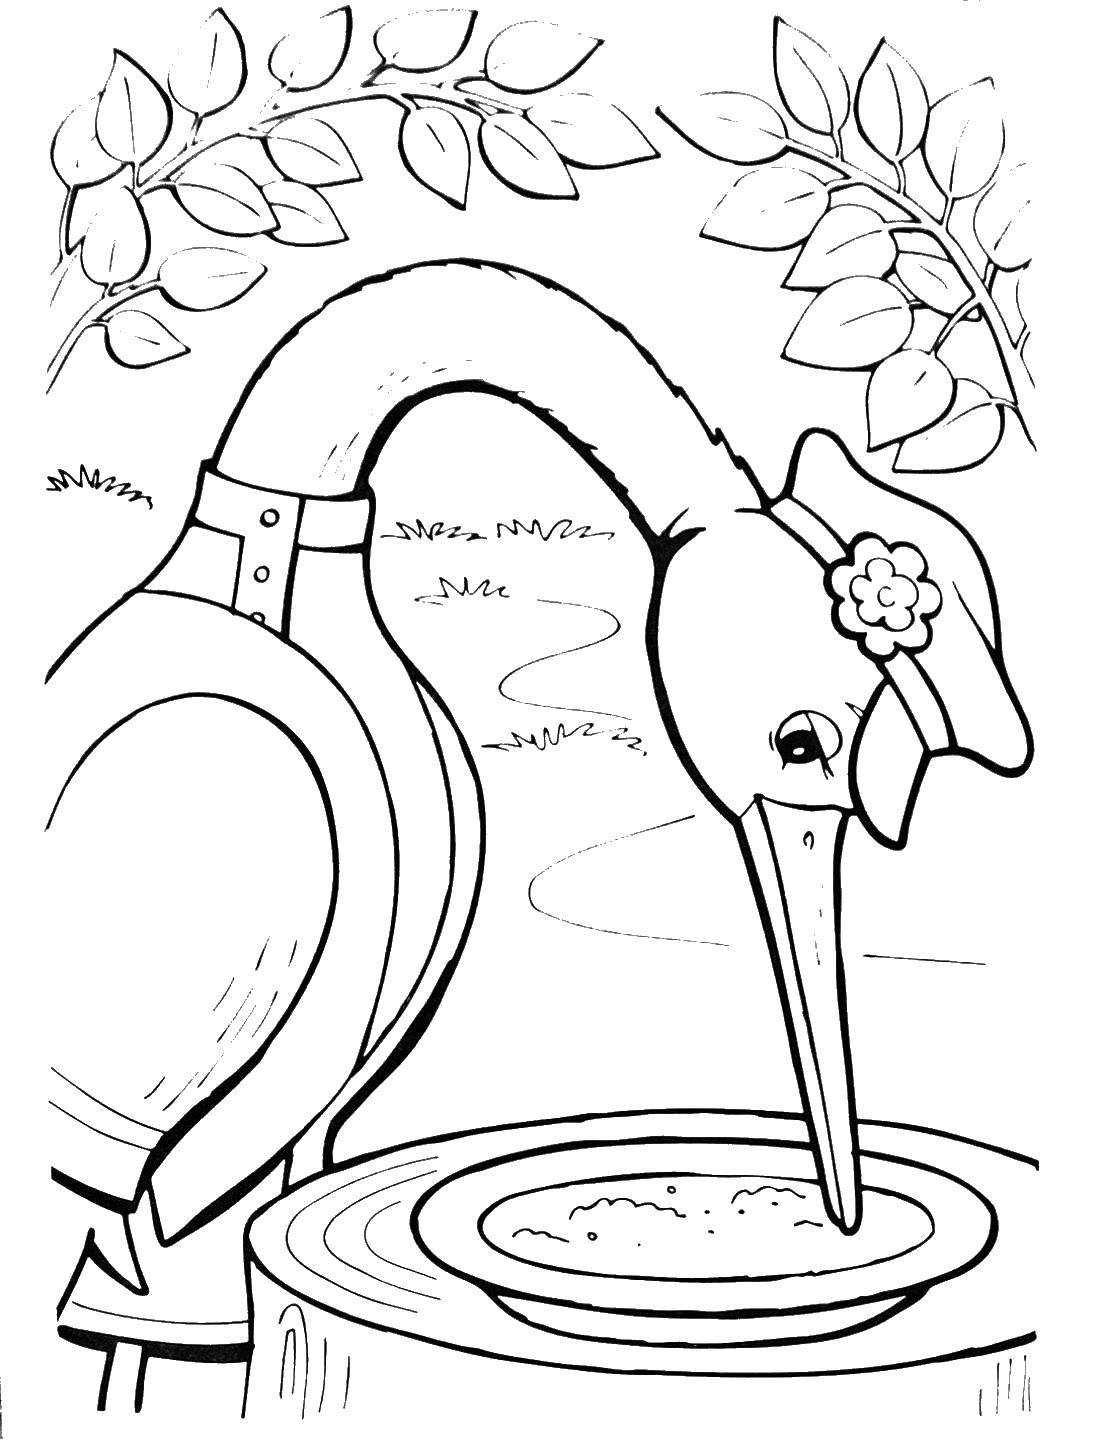 Иллюстрация к сказке лиса и журавль 2 класс